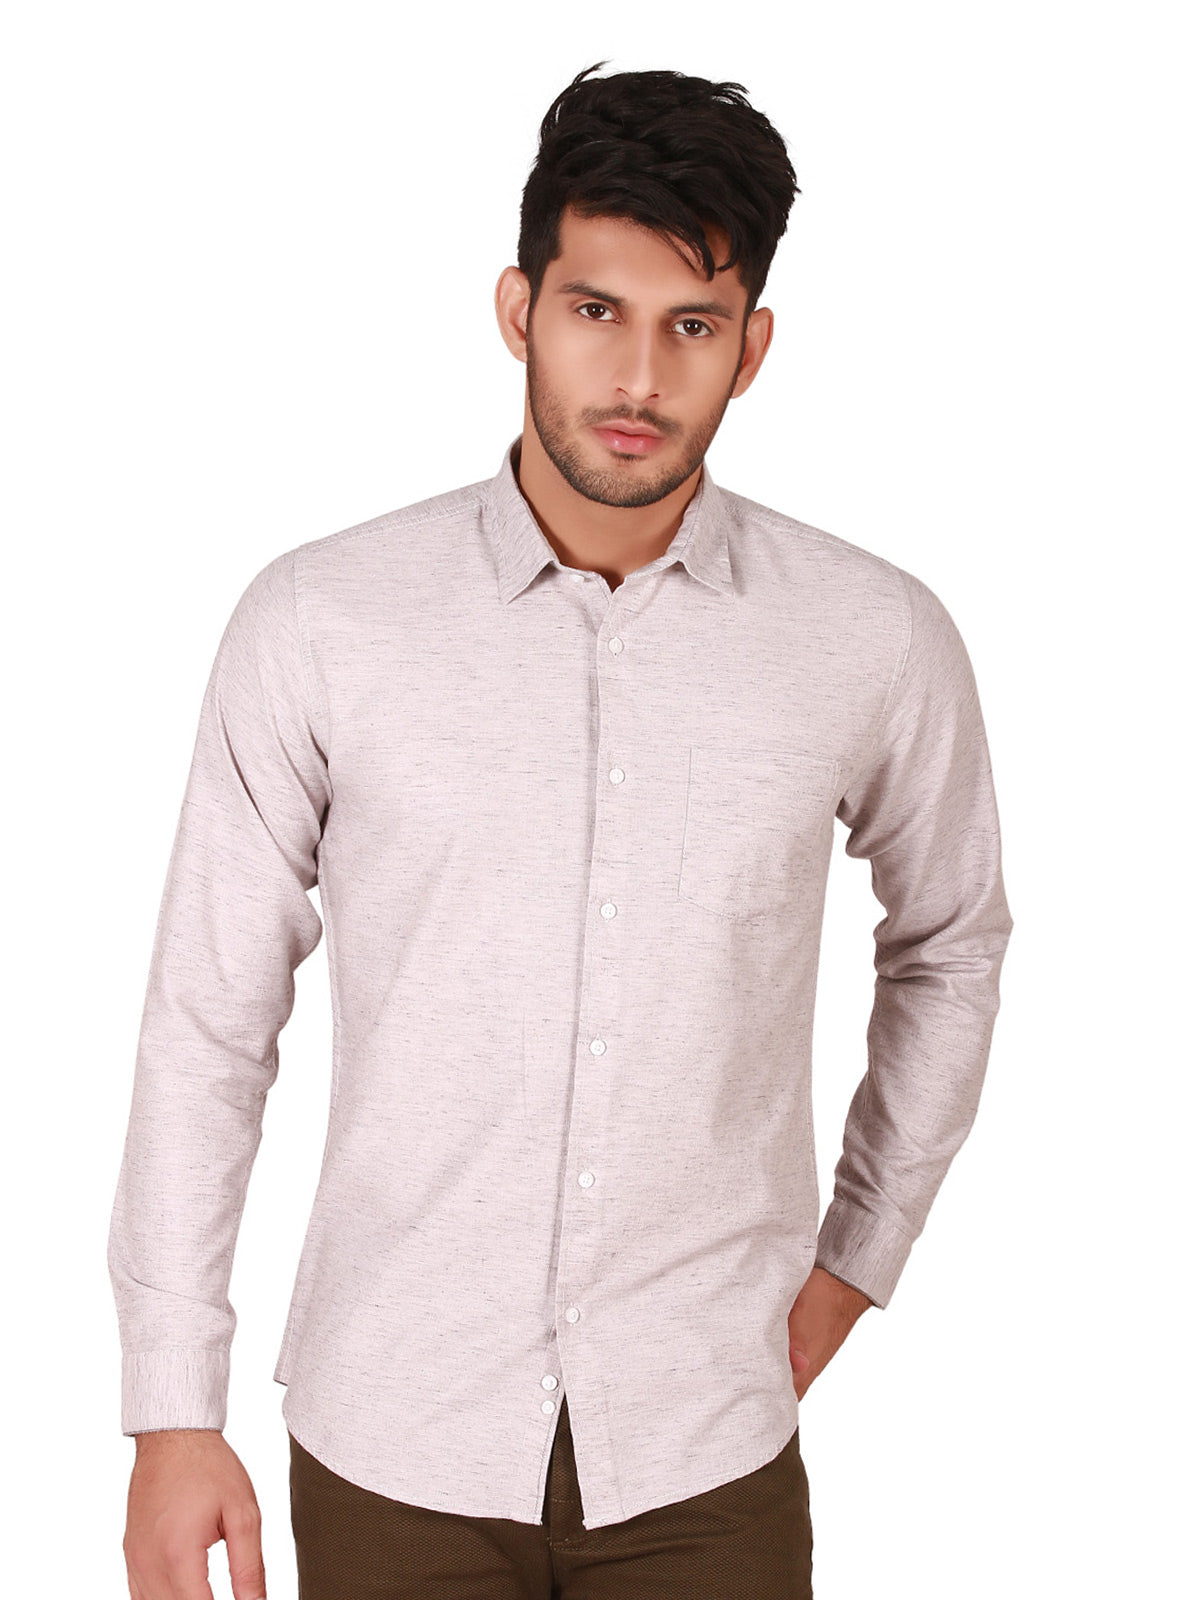 Men's Grey Casual Shirt - FMTS19-31262